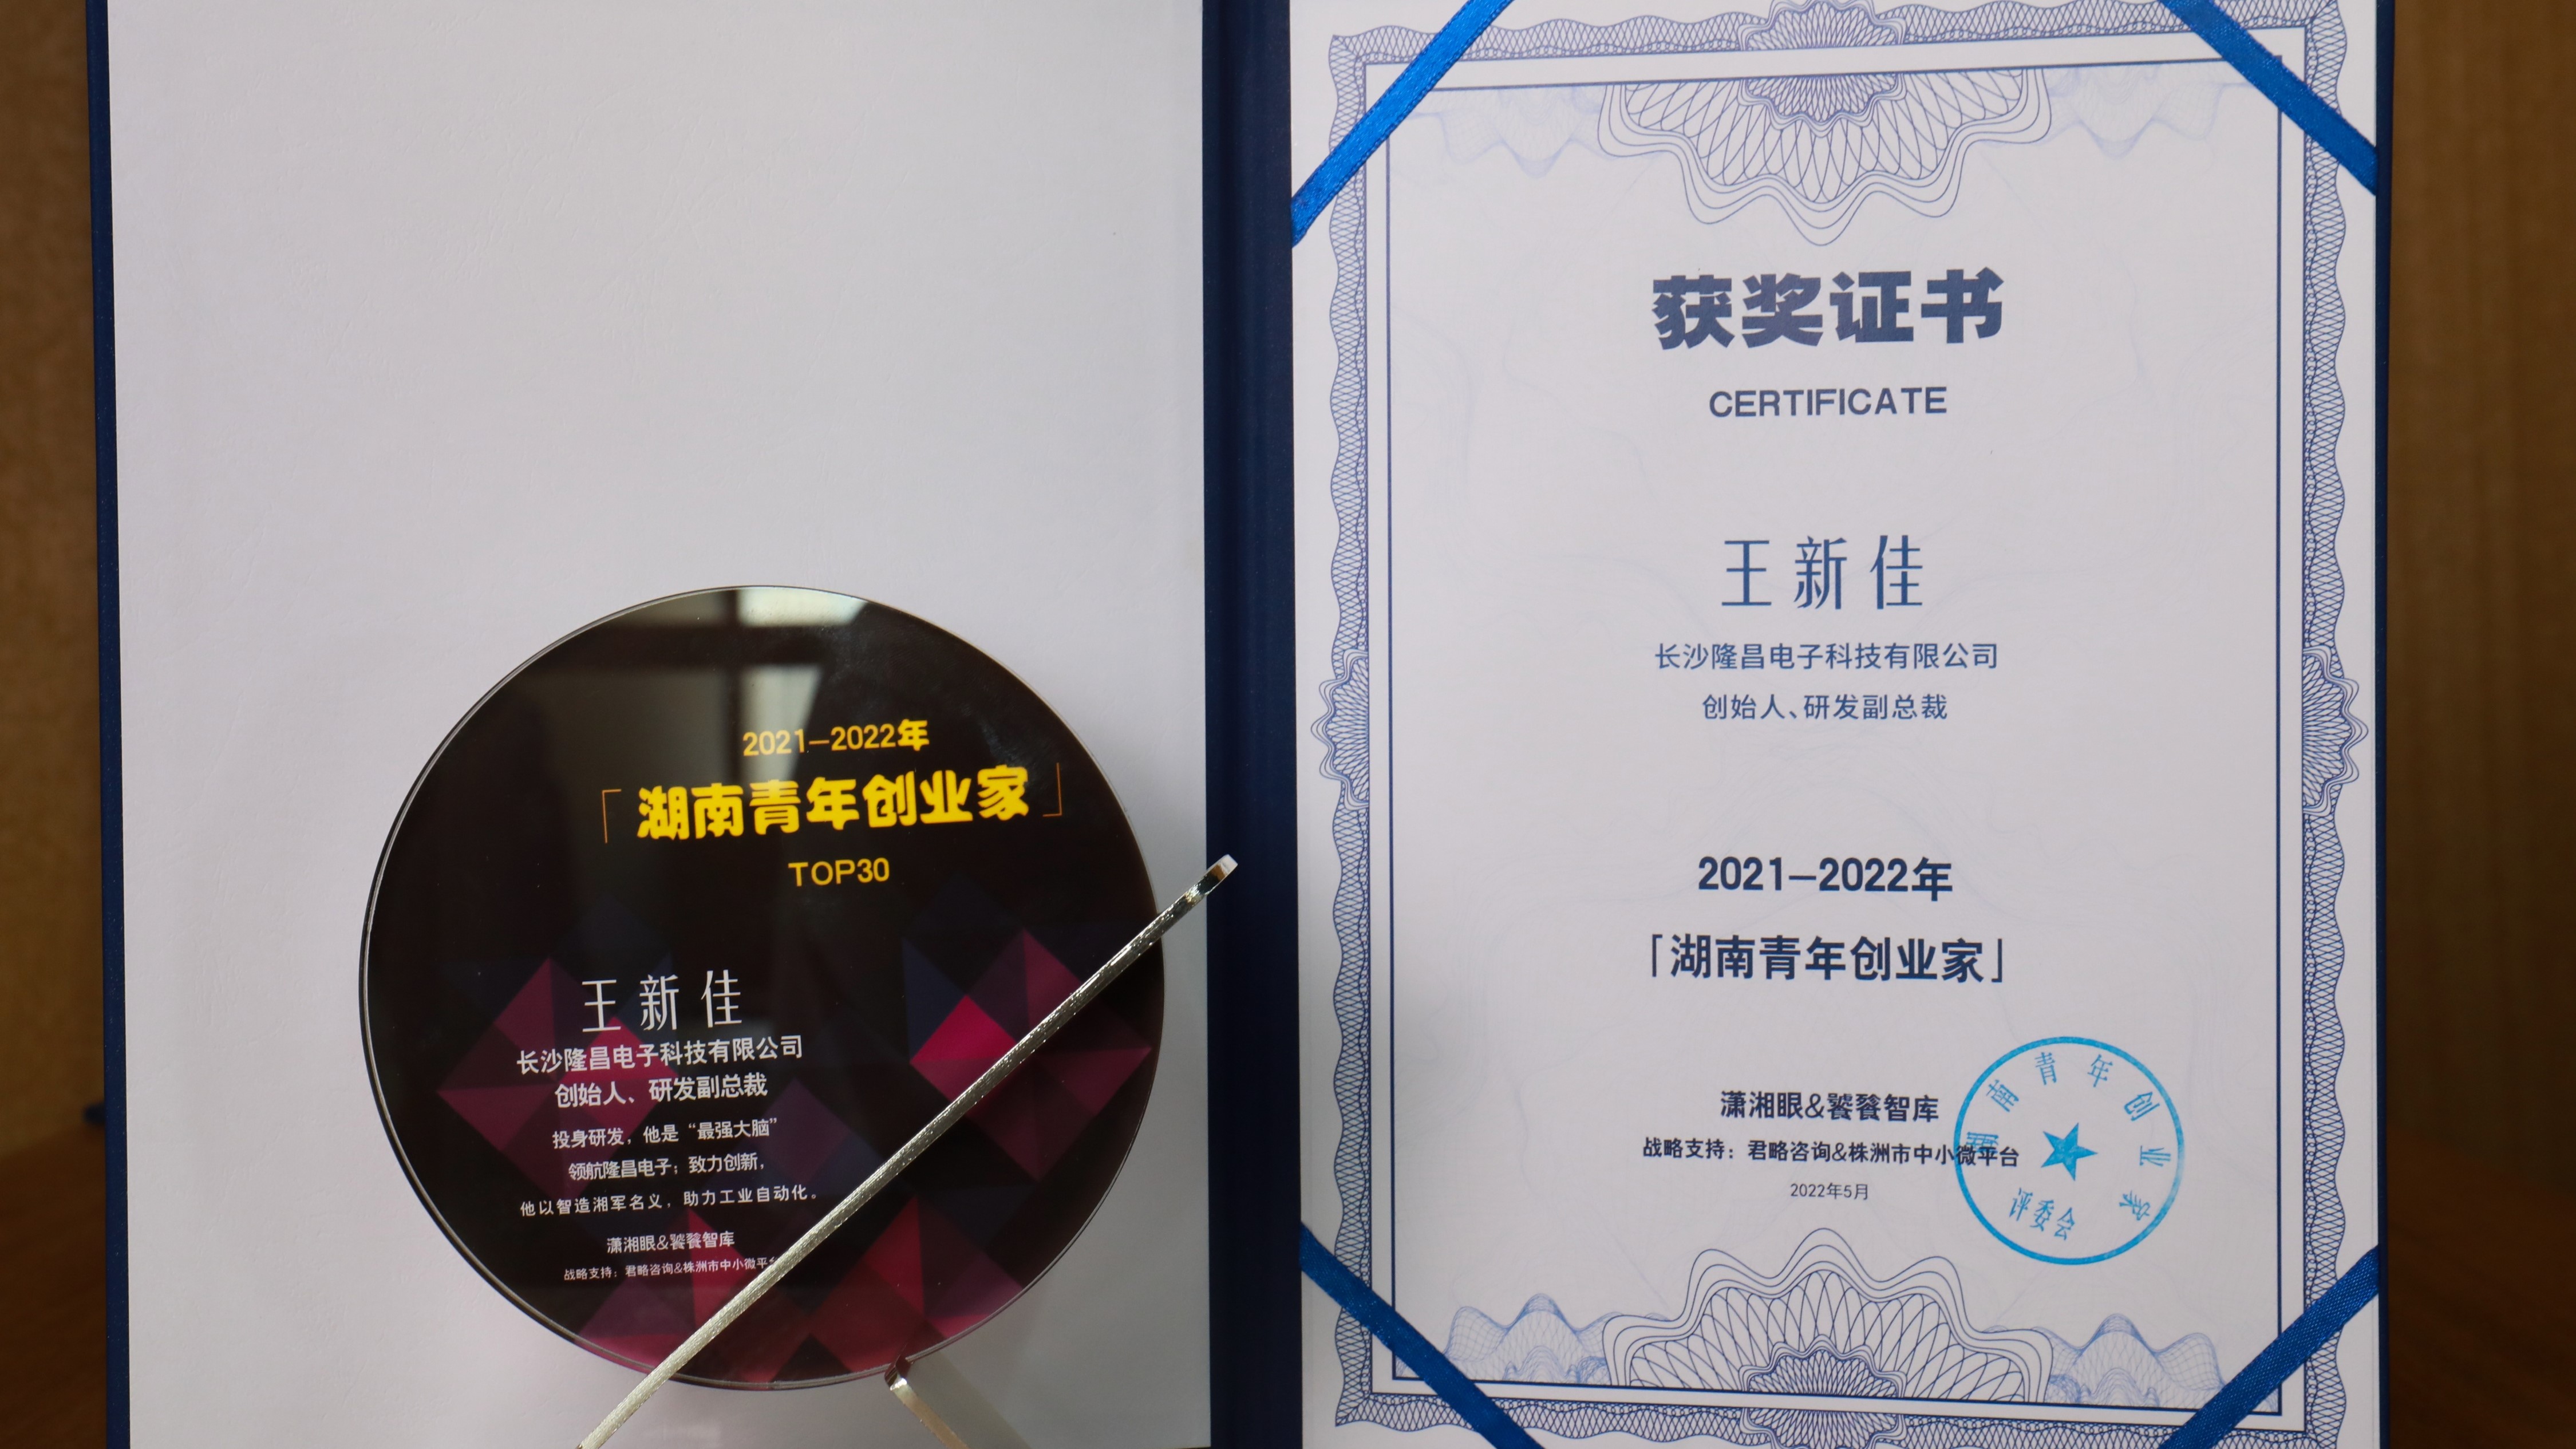 隆昌电子王新佳被授予“2021-2022年度湖南青年创业家”奖